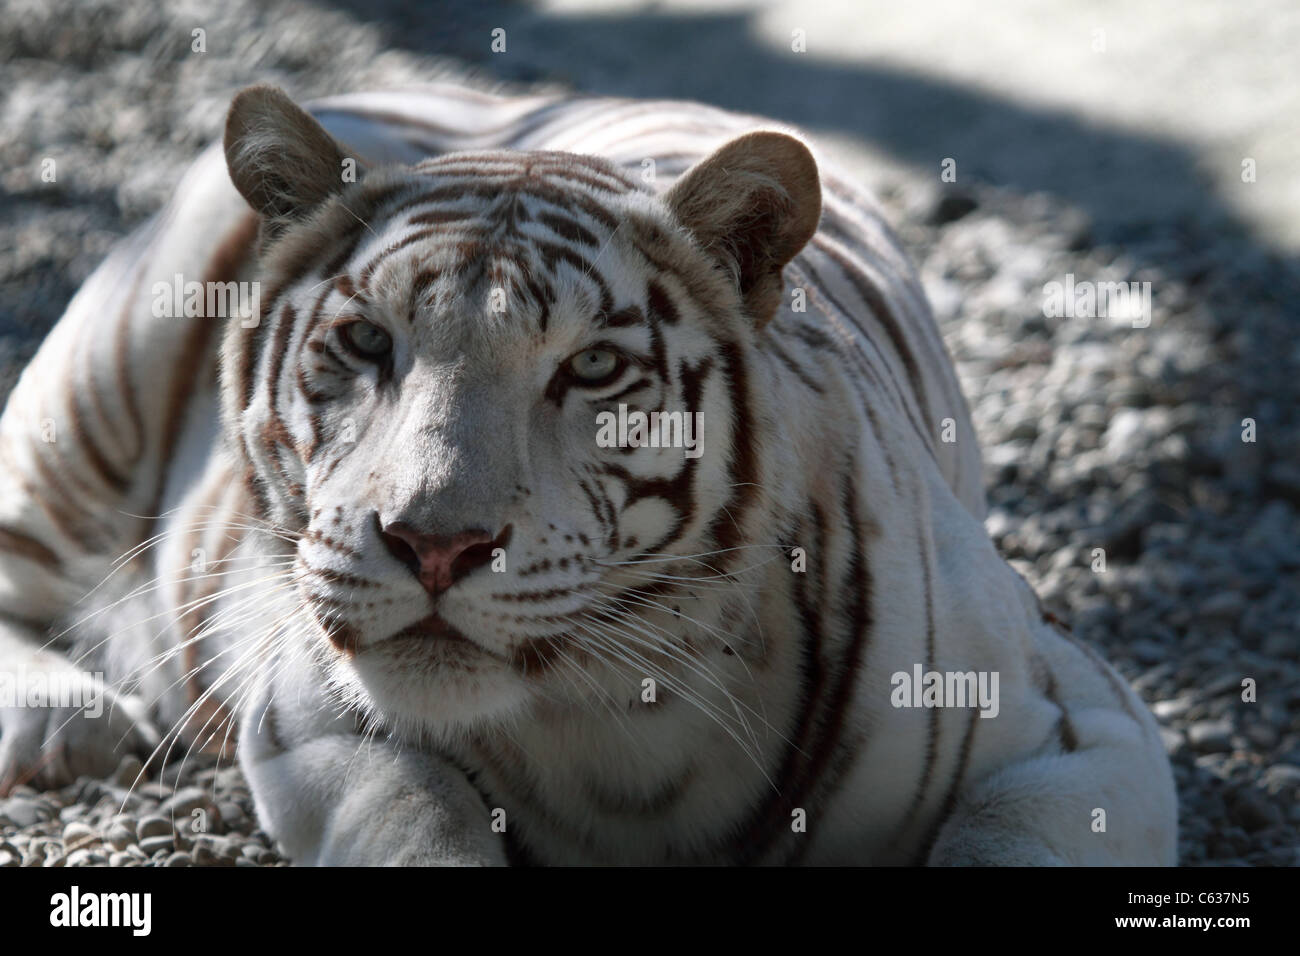 Tigre blanco en cuclillas Foto de stock